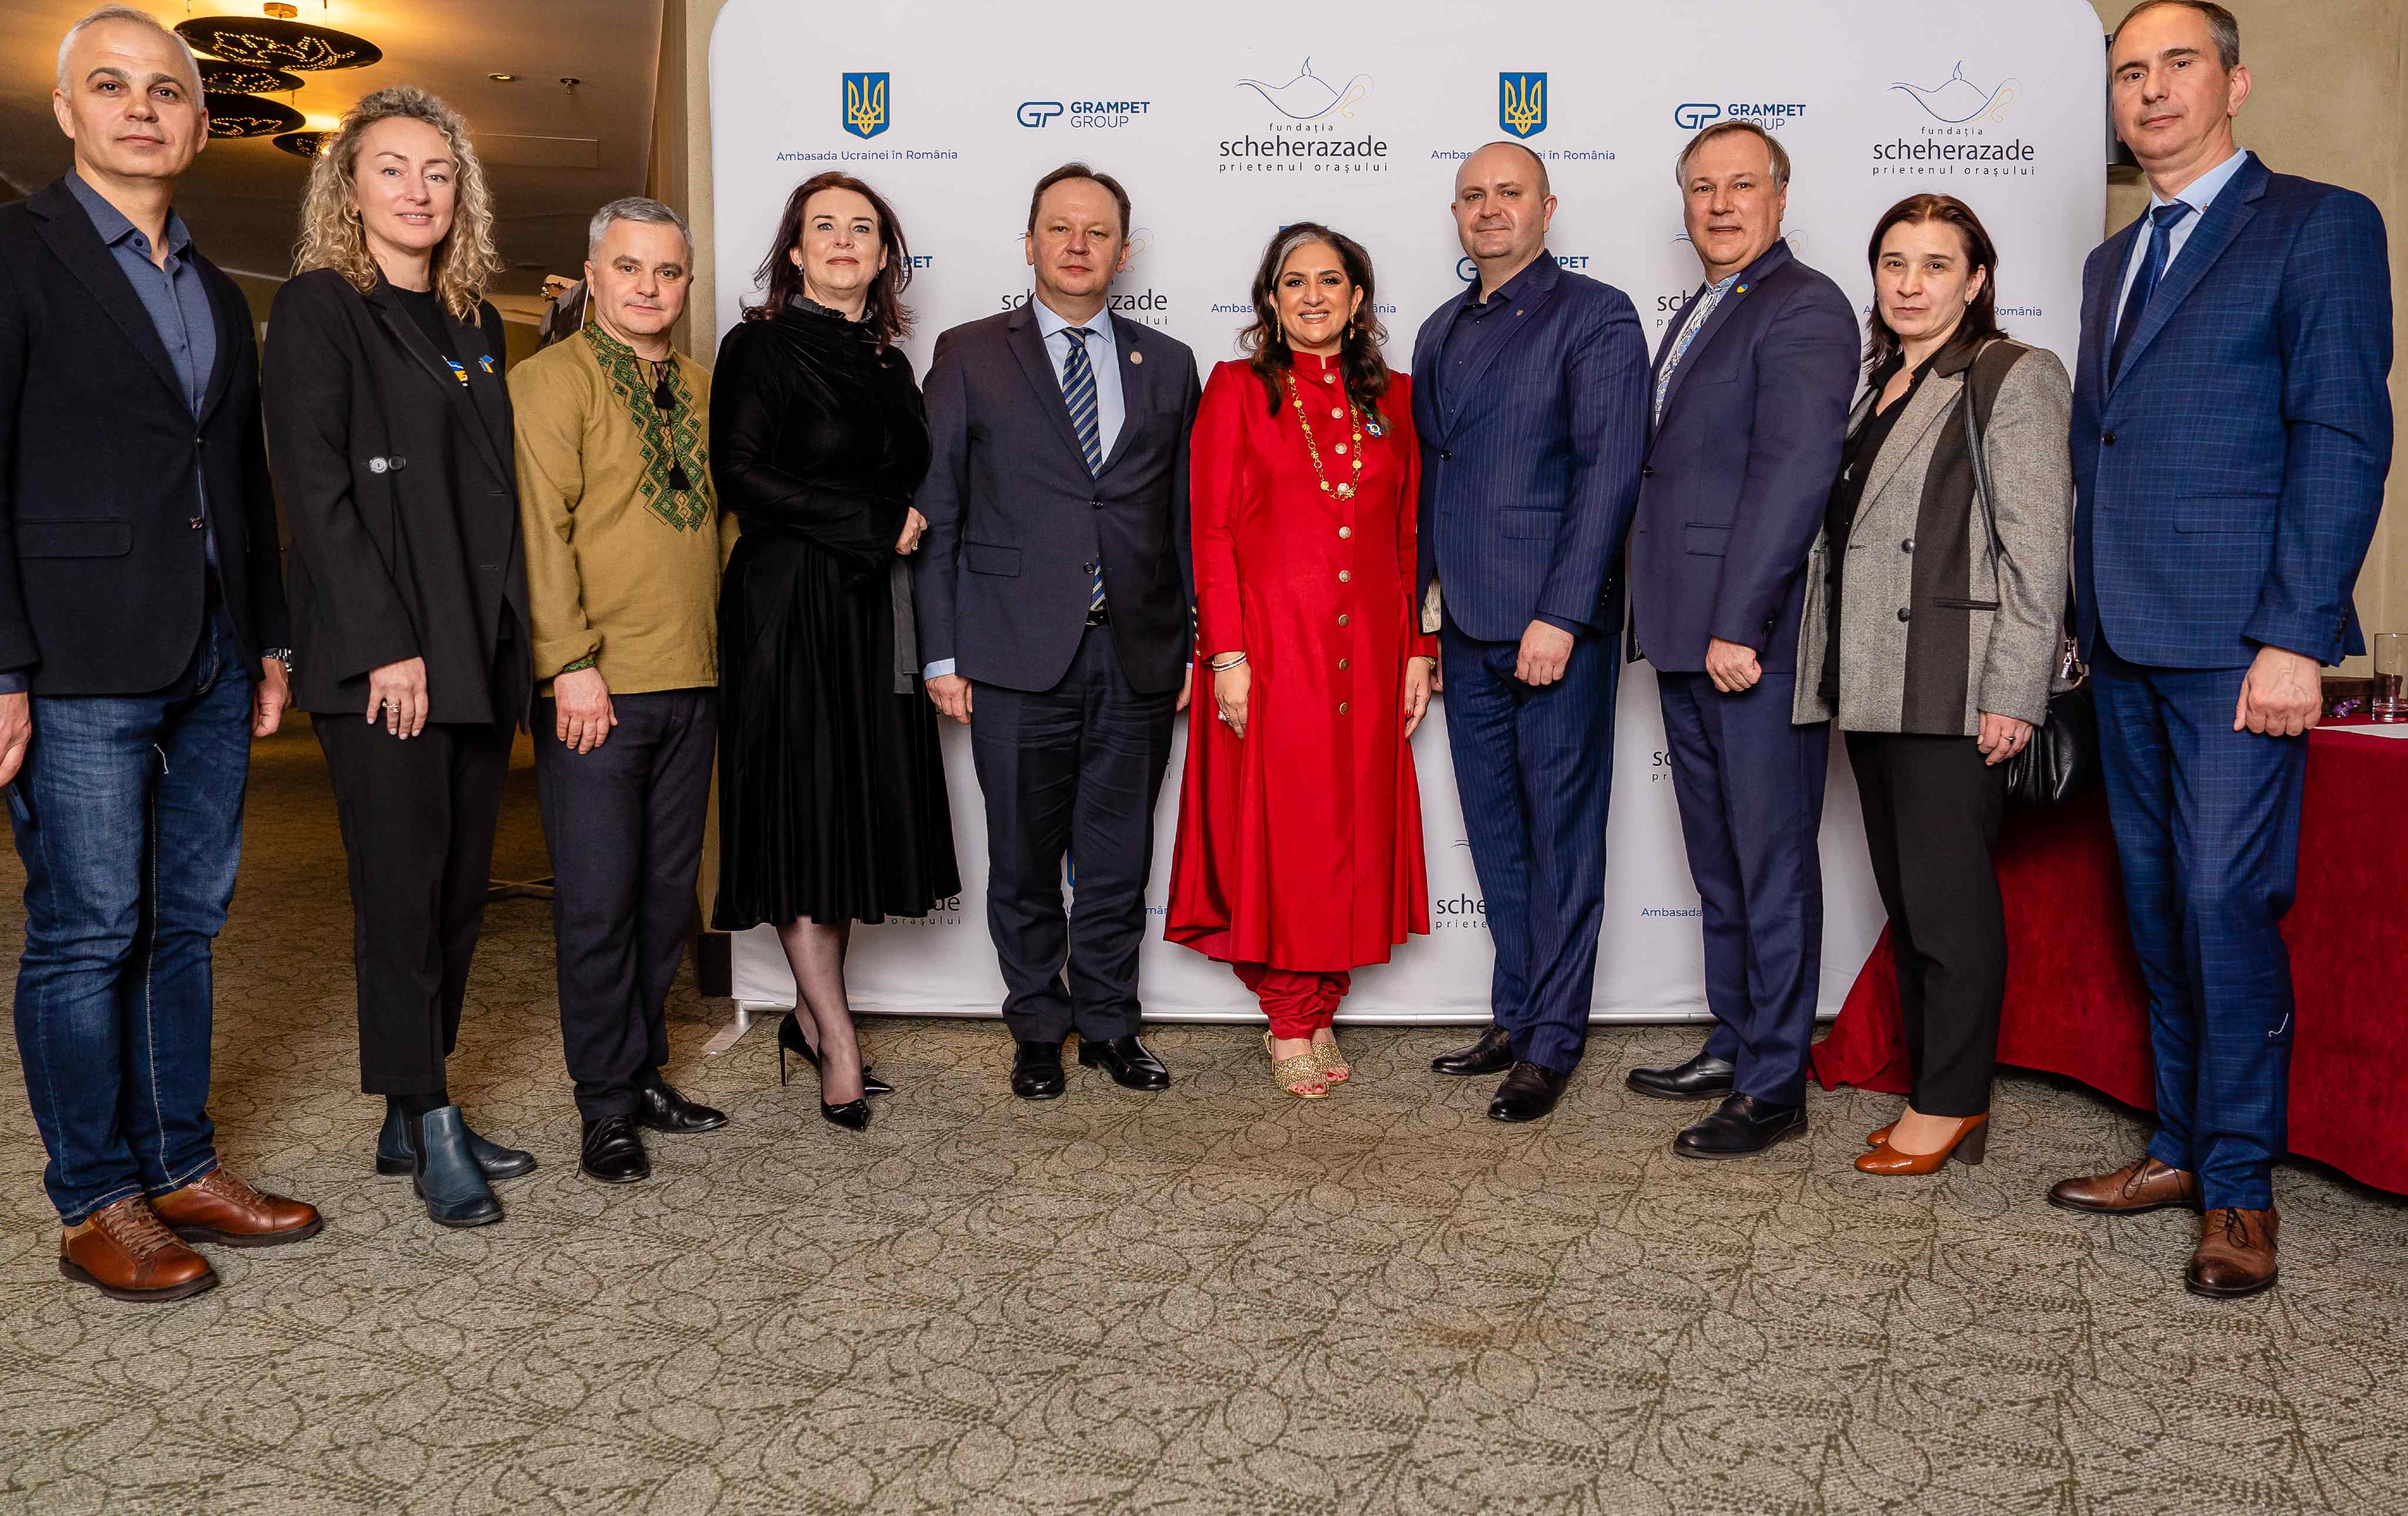 Fundația Scheherazade și Ambasada Ucrainei onorează peste 20 de companii și instituții care au sprijinit Ucraina cu donații semnificative în anul 2022